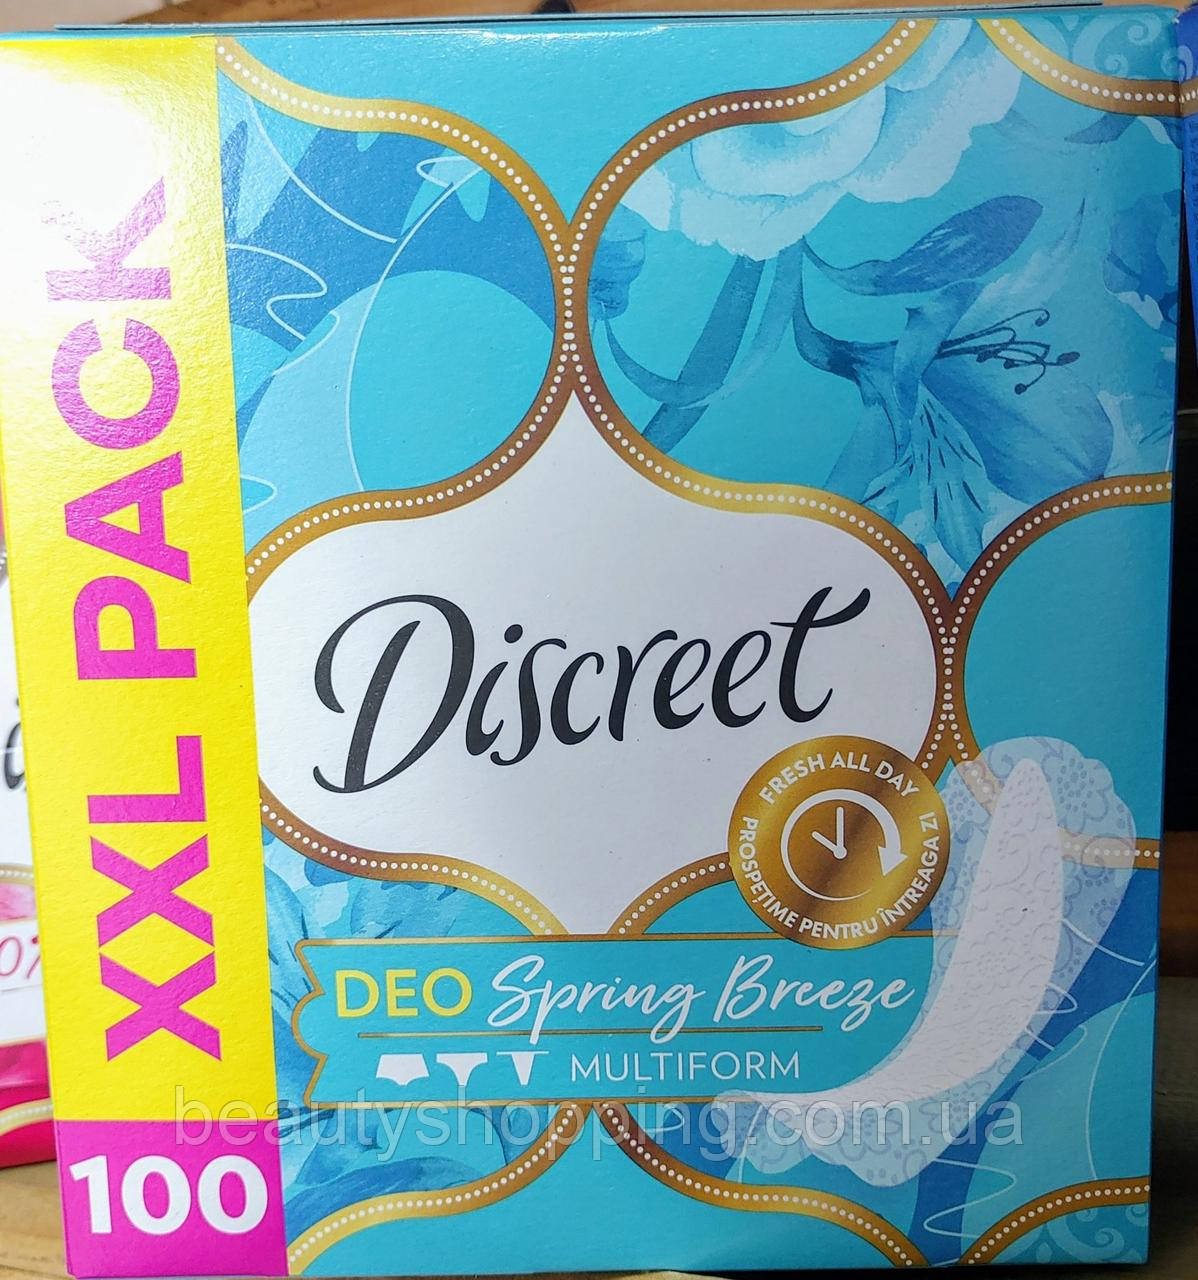 Discreet Deo Spring Brezze muitiform Жіночі щоденні гігієнічні прокладки 100 штук